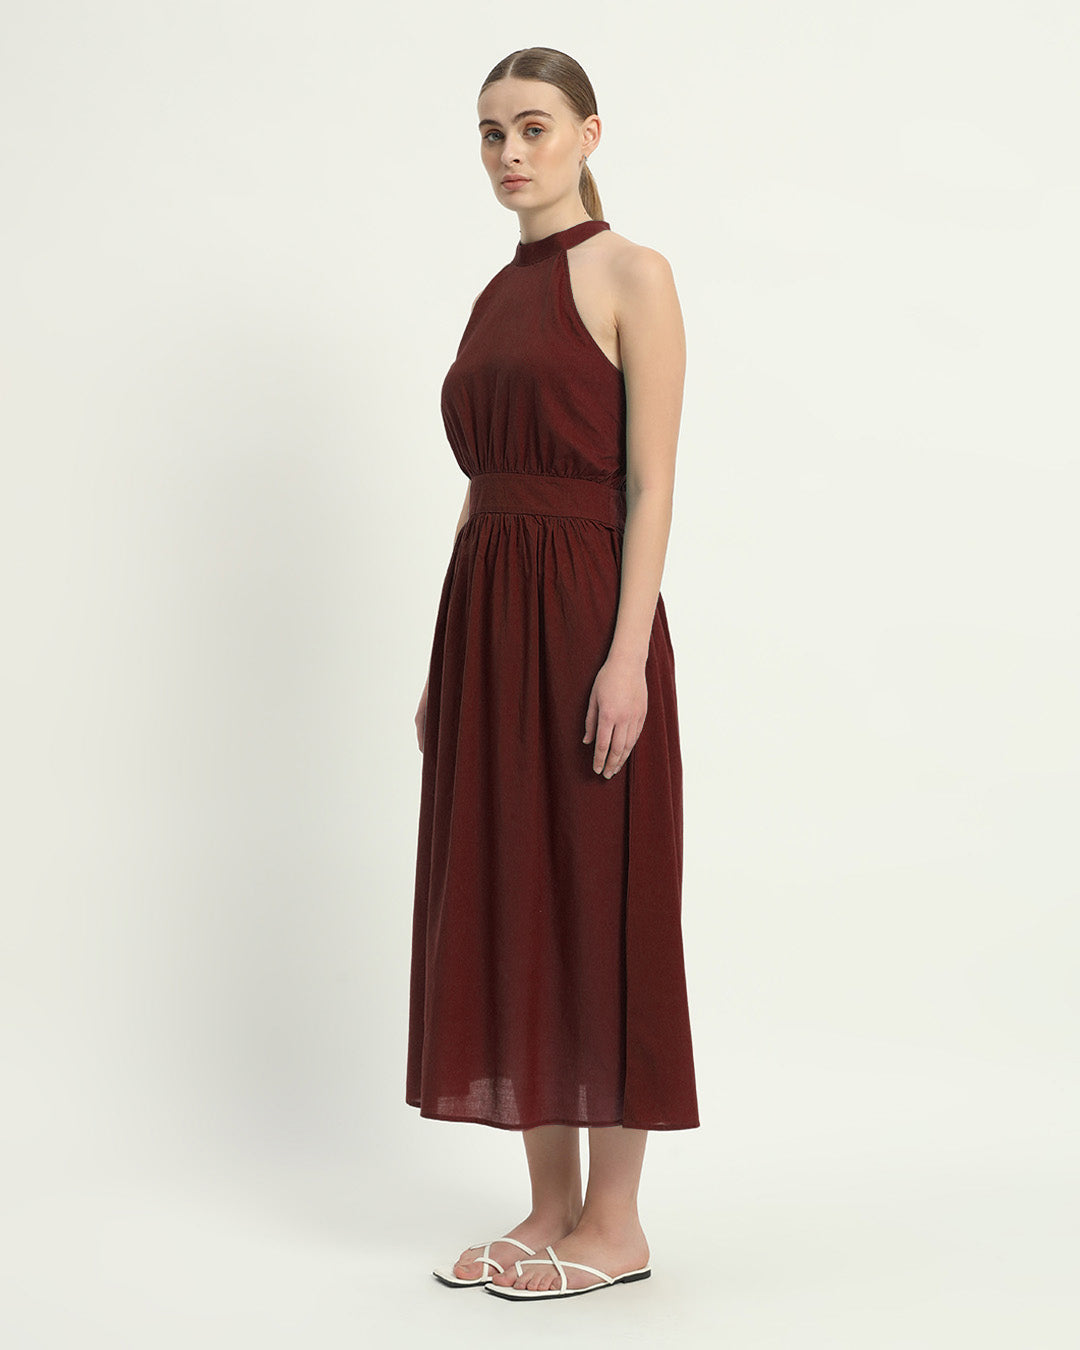 The Massena Rouge Cotton Dress